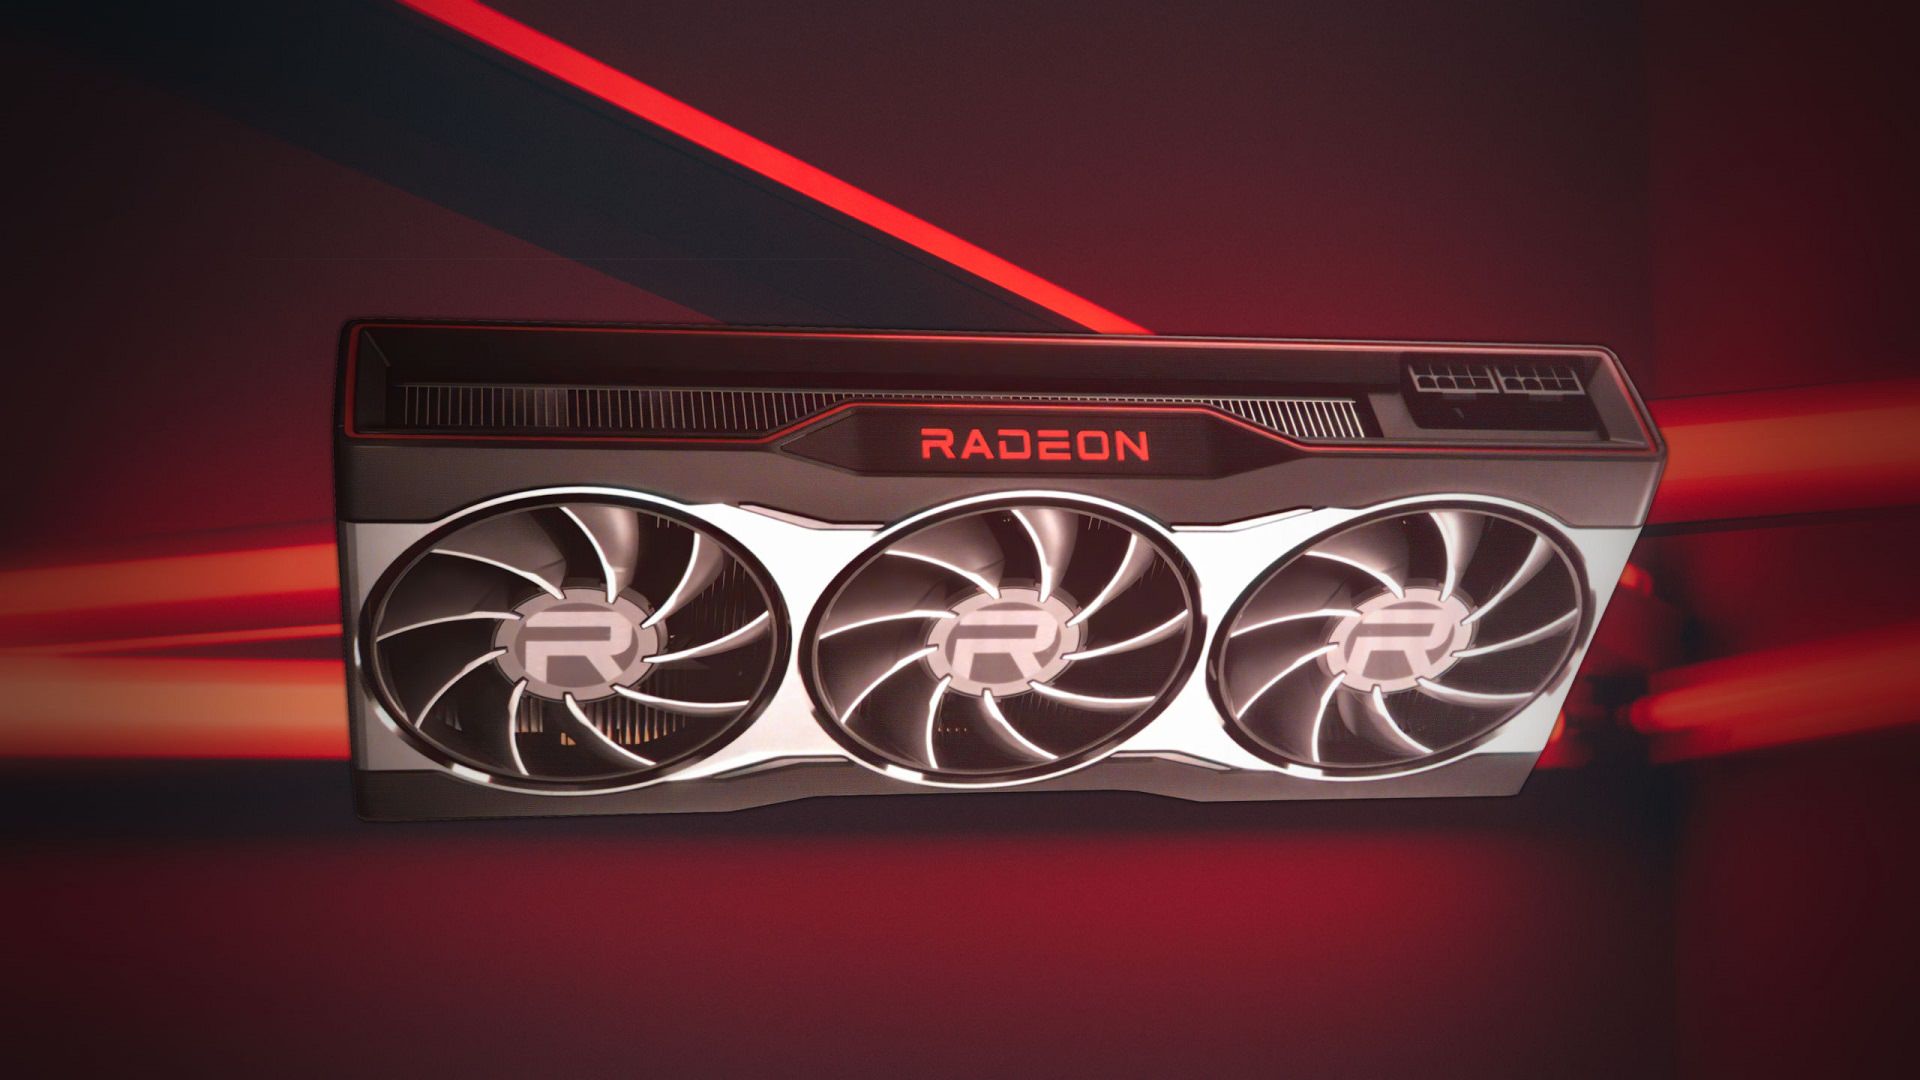 بزرگترین فروشگاه سوئیس تنها ۳۵ عدد Radeon RX 6900 XT برای فروش دریافت کرده است